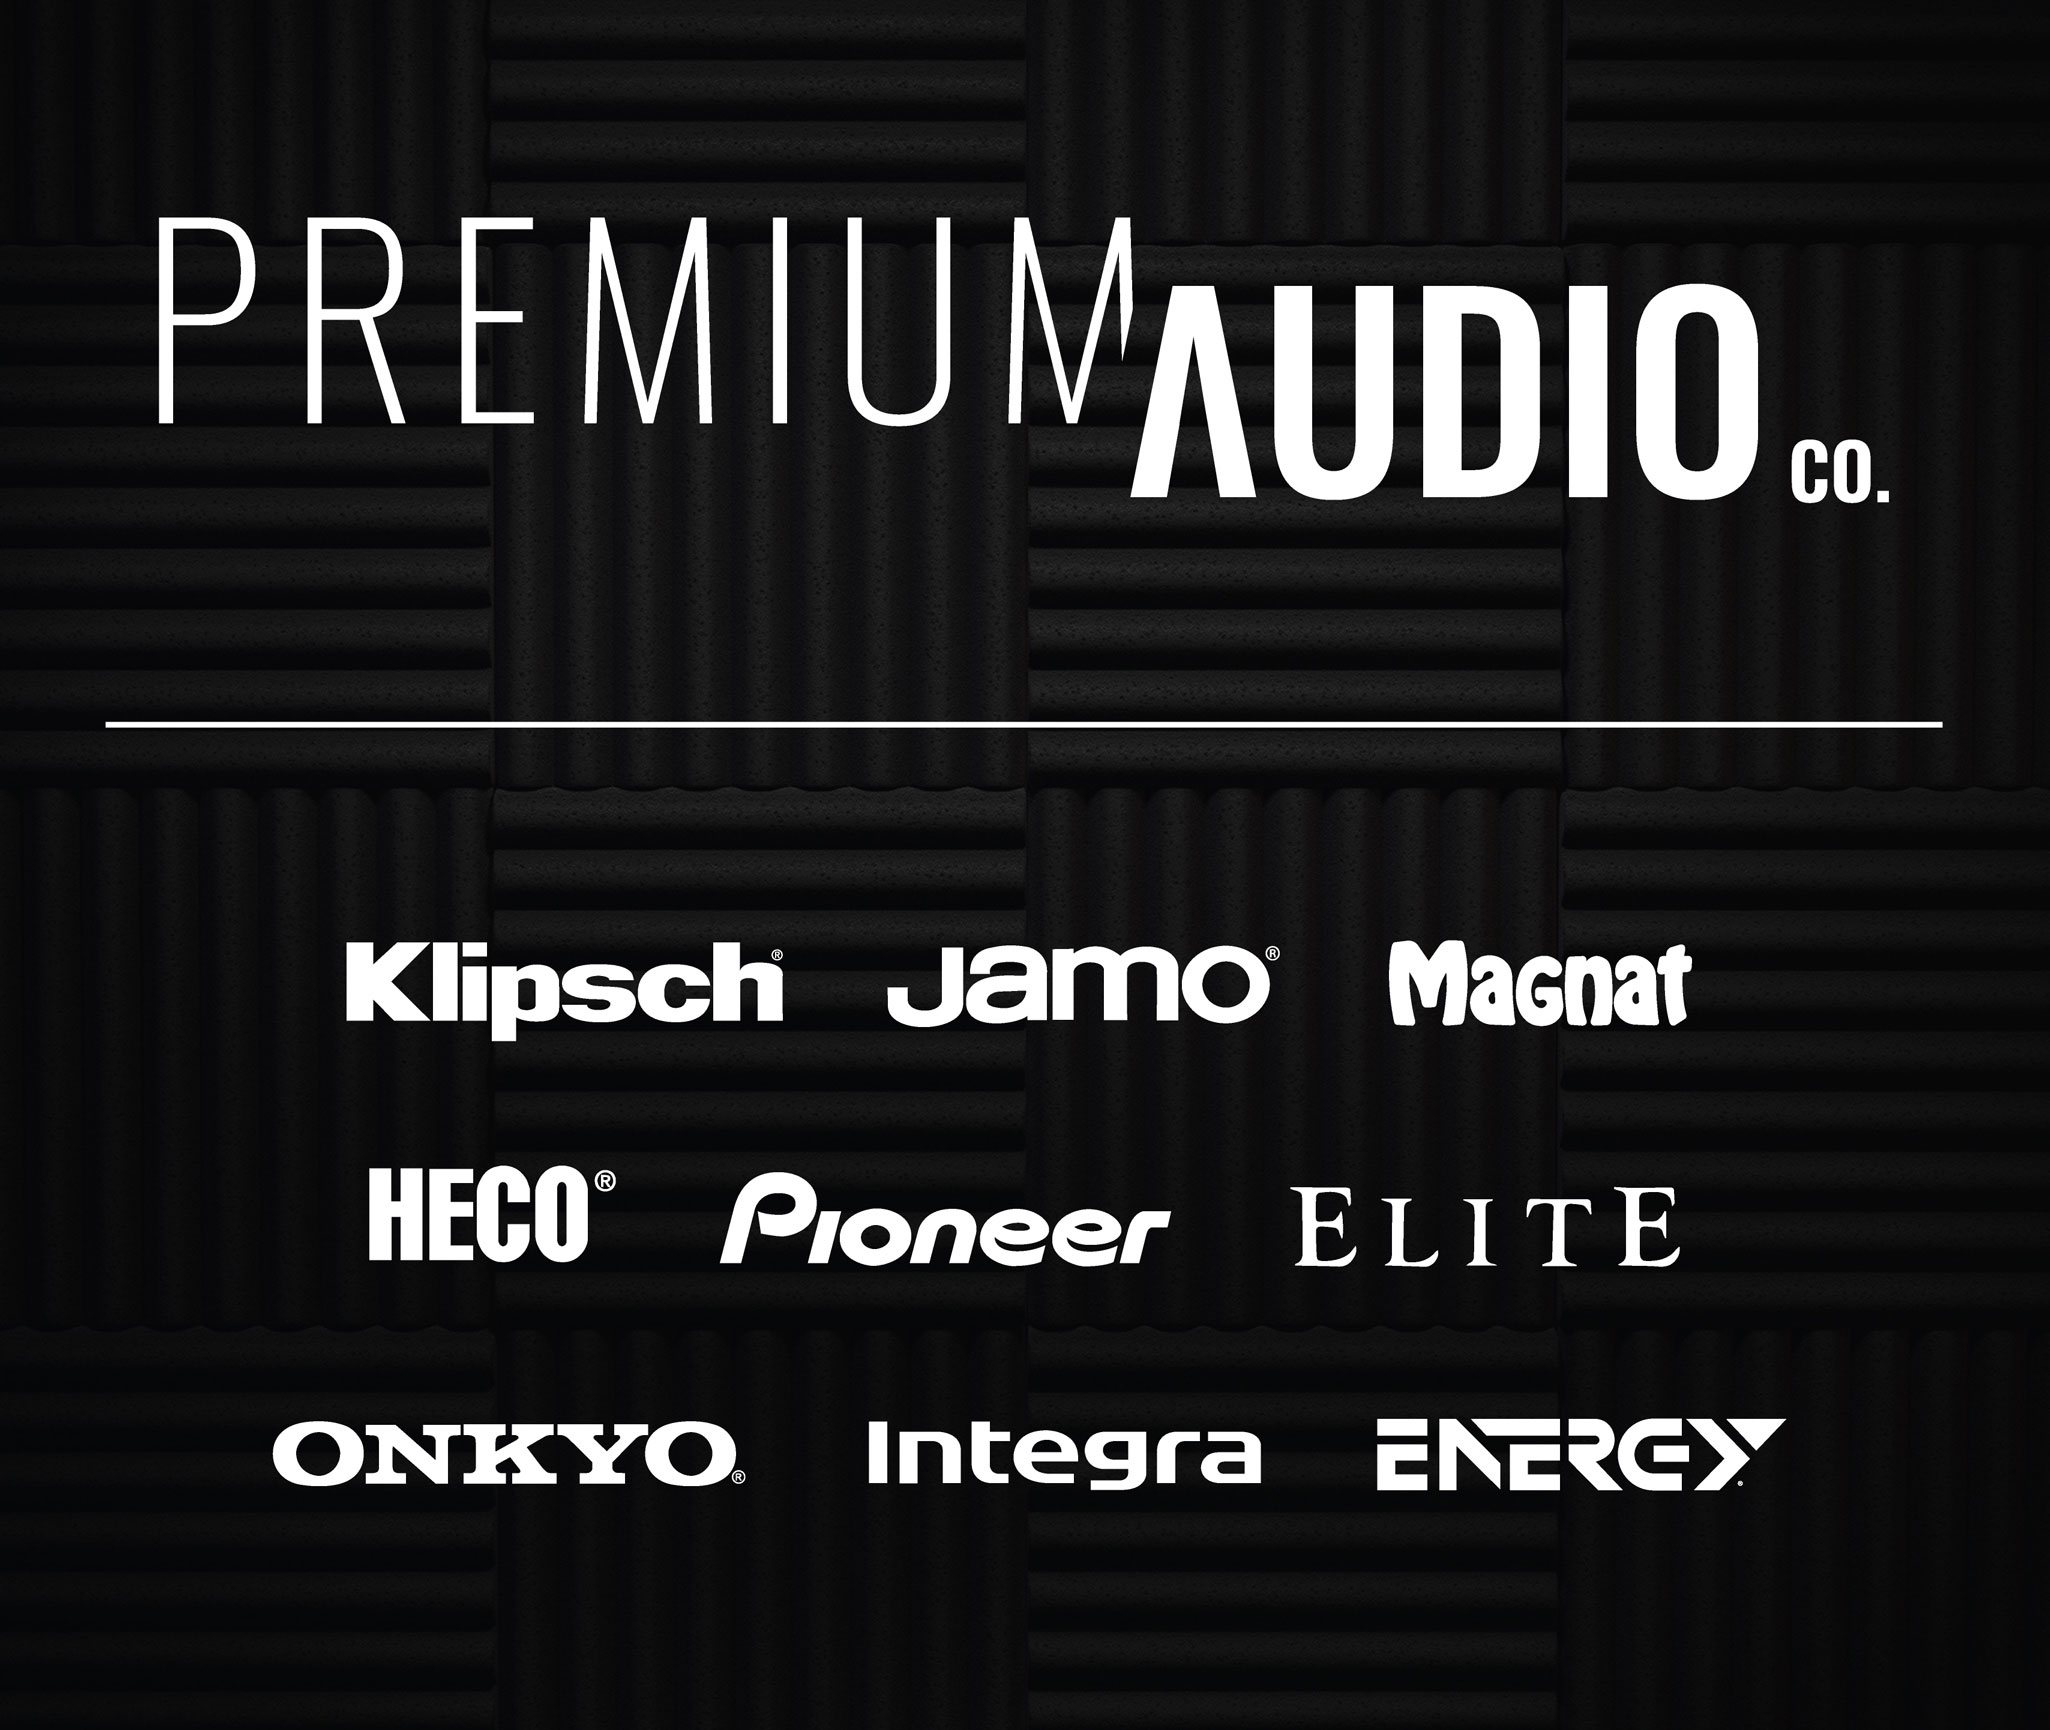 Premium Audio Company logo on black